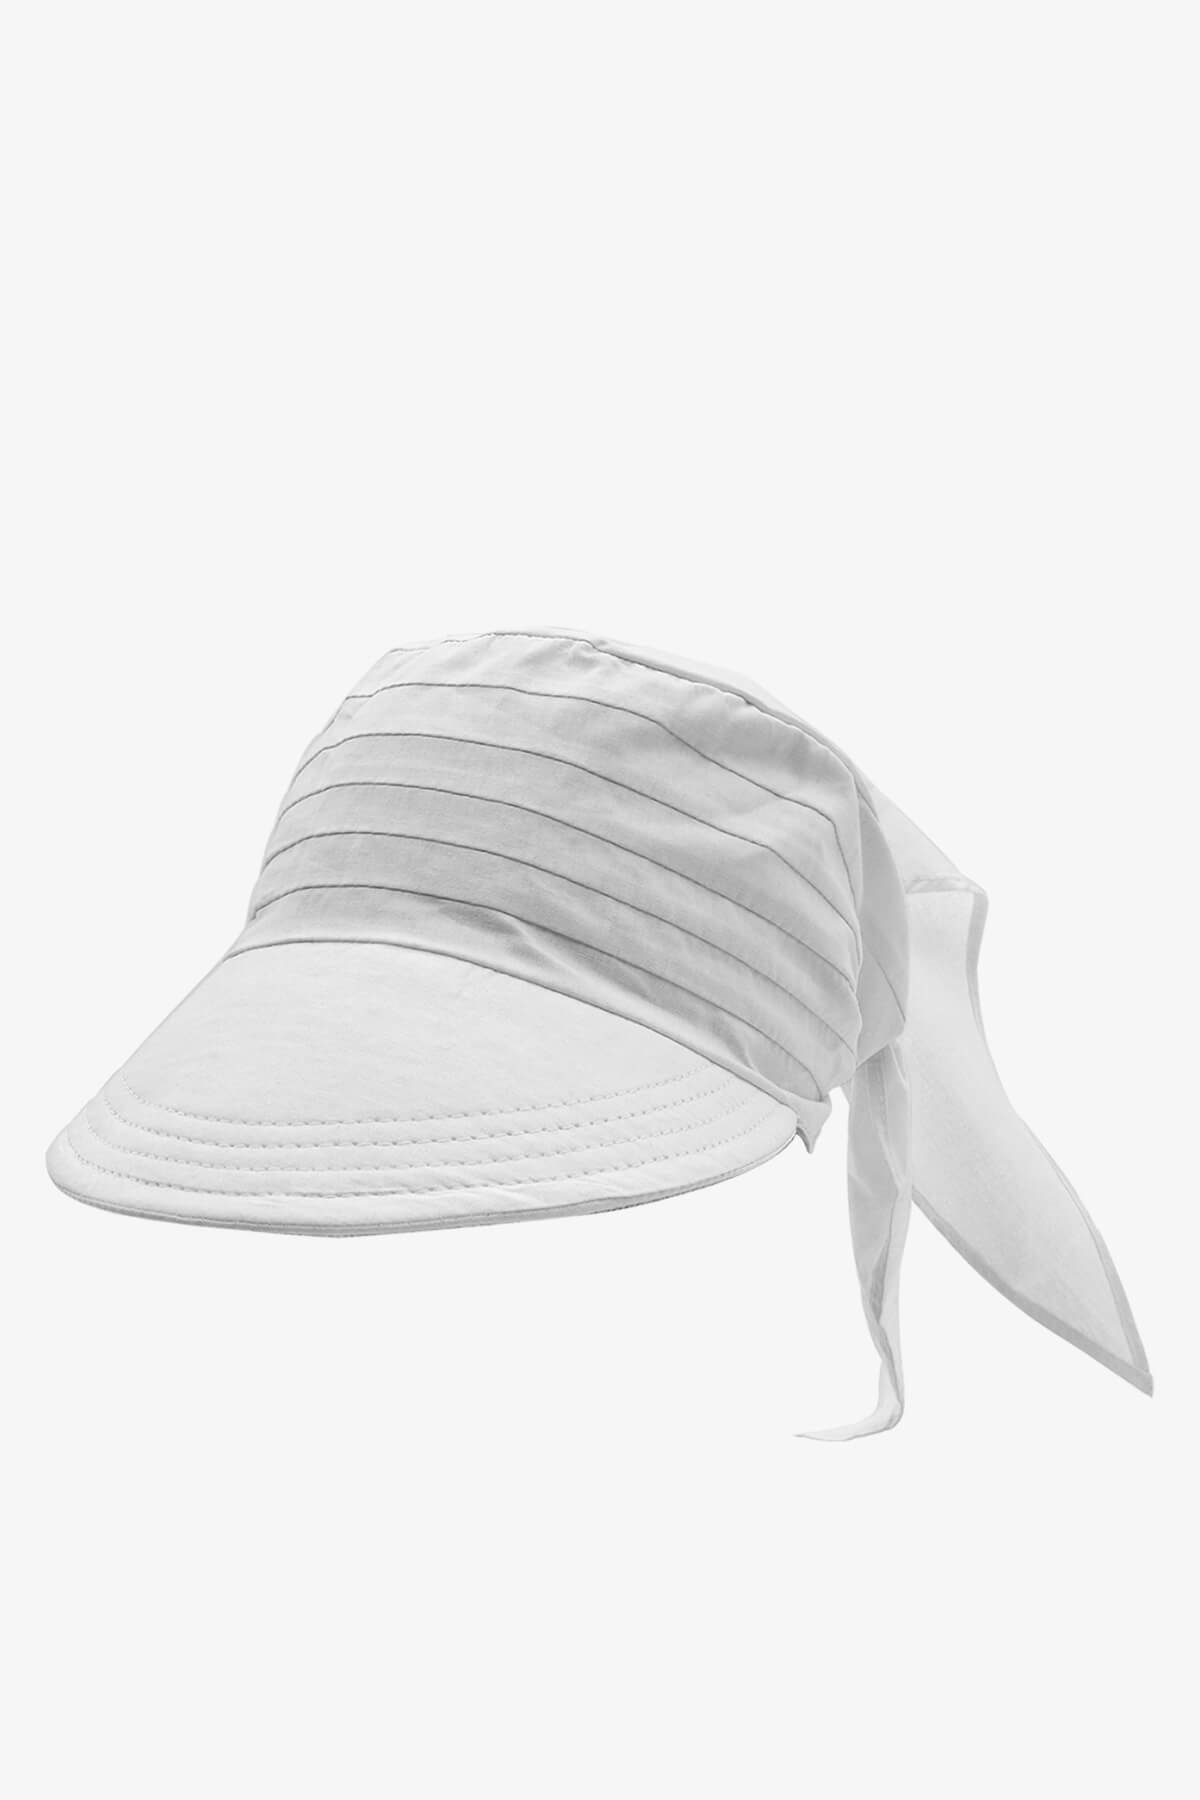 Külah Safari Şapka Bağlamalı Siperli Bandana Plaj Şapkası Beyaz KLH0473